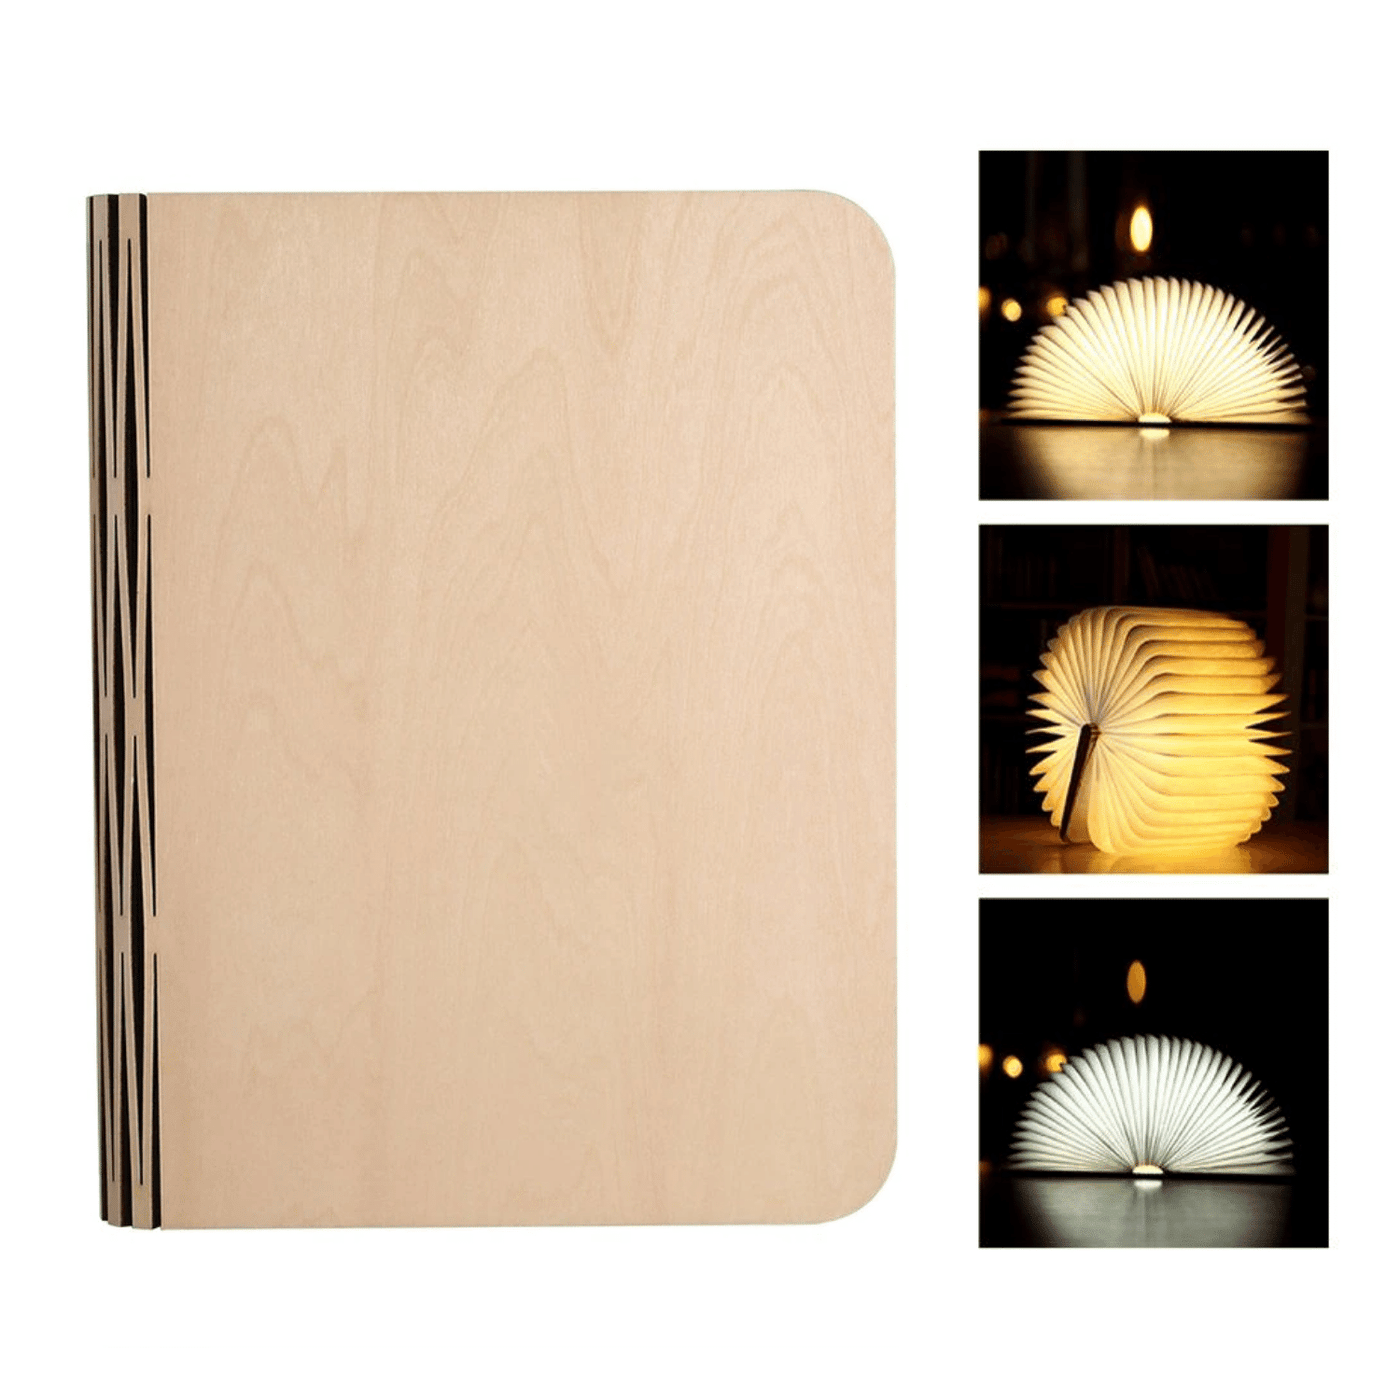 Luca Wireless Folding Book Lamp - Skaldo & Malin